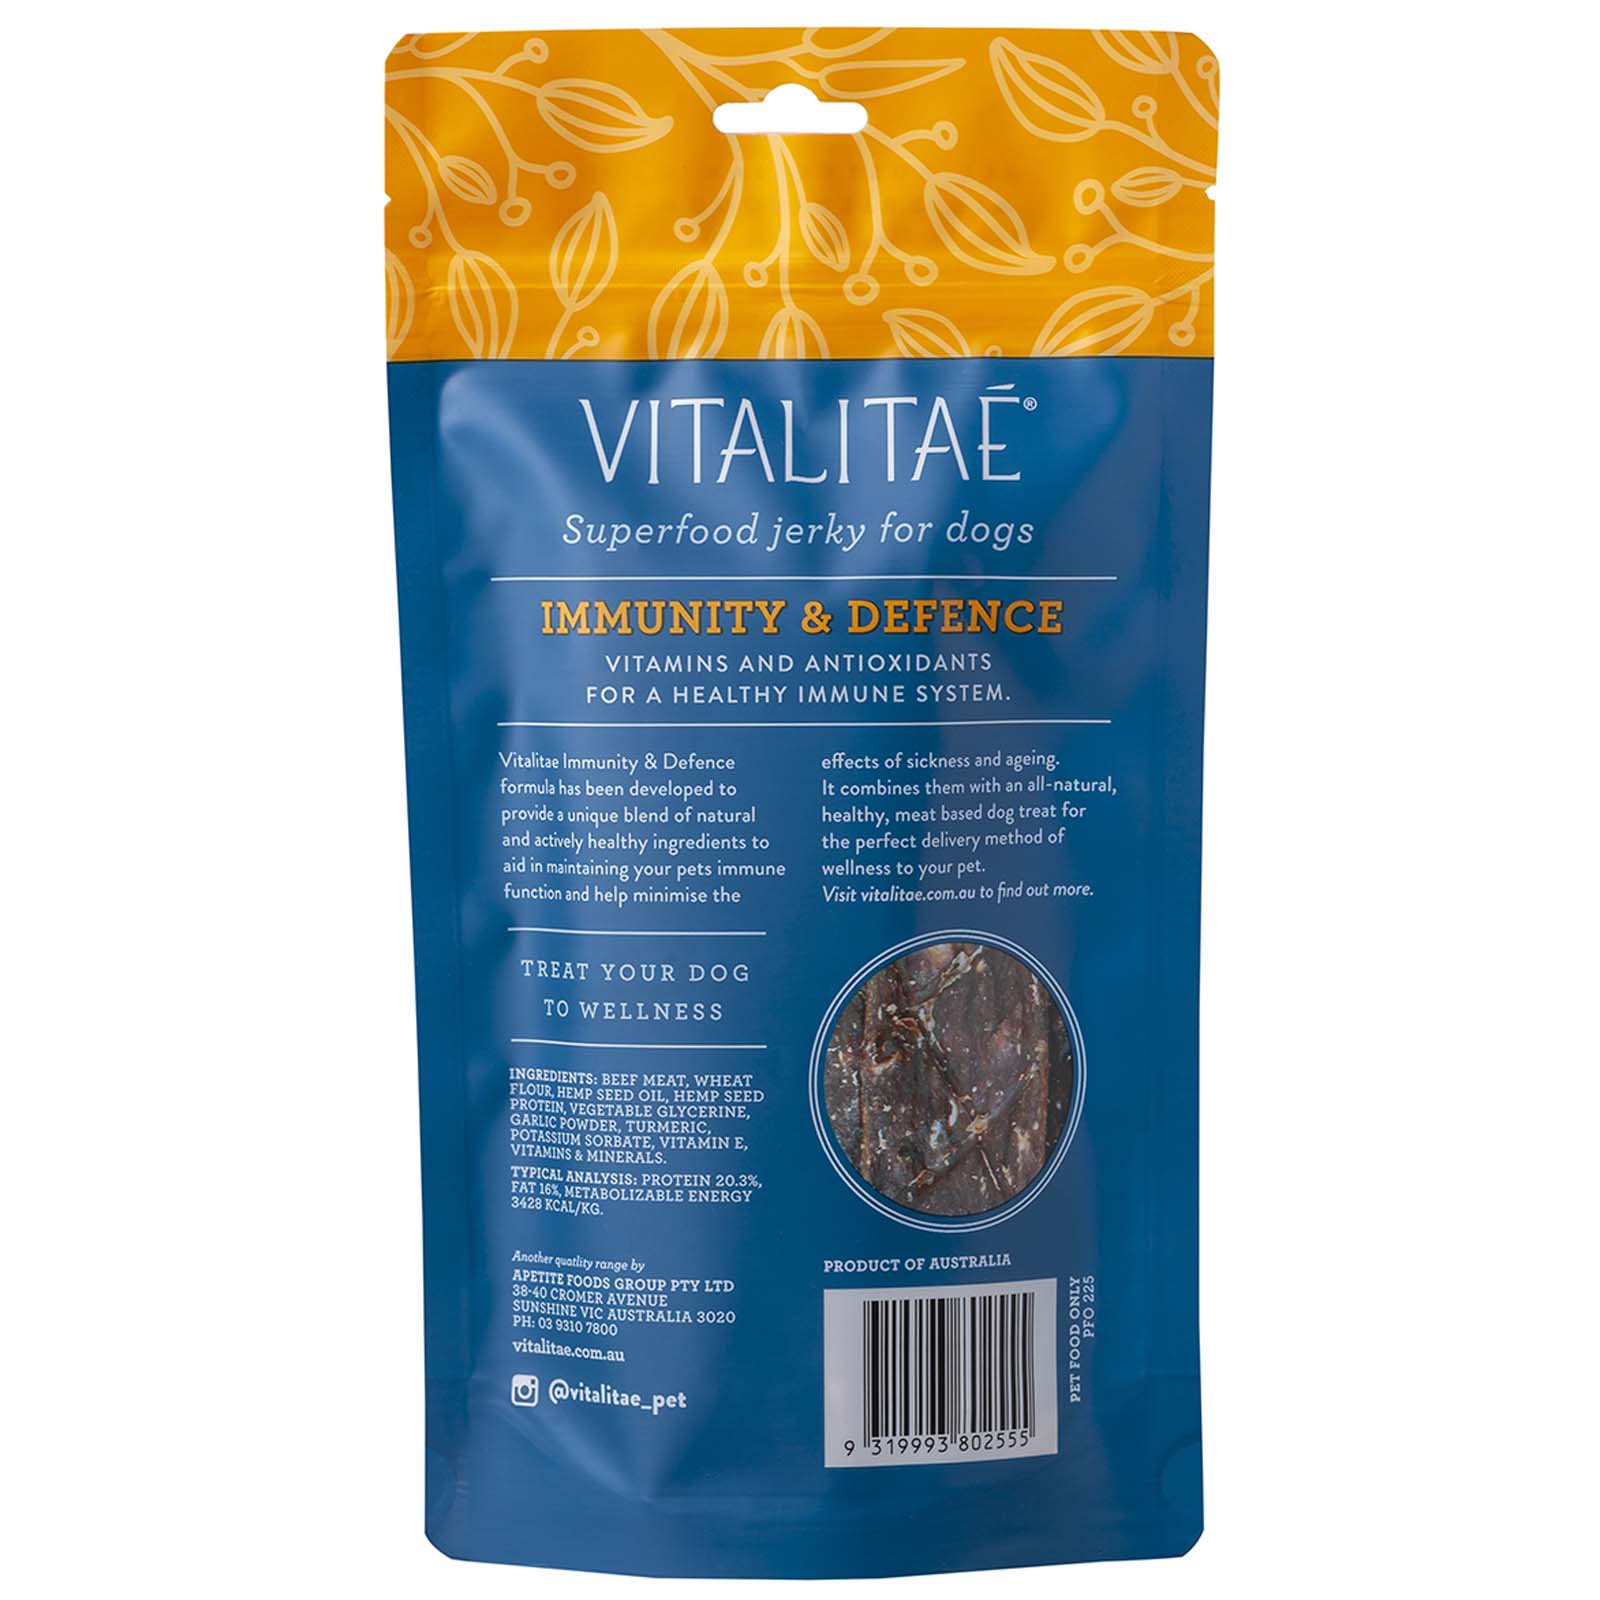 Vitalitae Superfood & Hemp Oil Dog Treats - Immune & Defense Jerky - 150g image 0